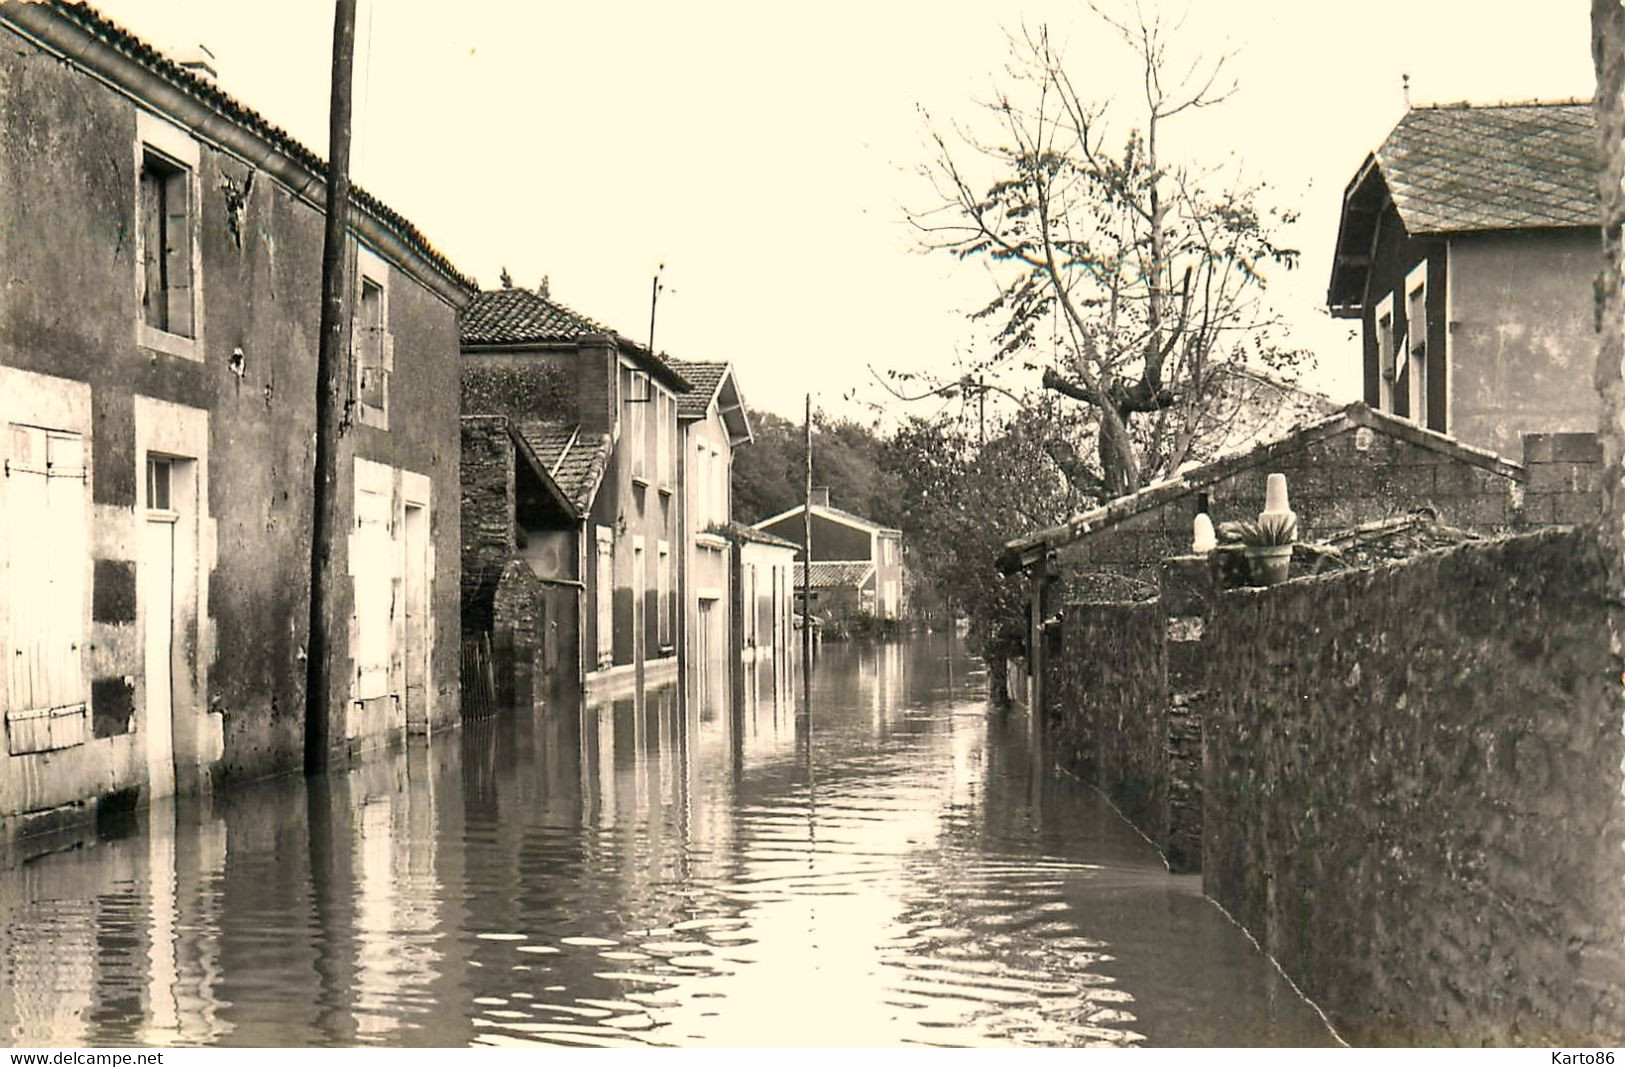 Mareuil Sur Lay Dissais * 21 Cartes Photos * Inondations * Rues Hélicoptère Commerces * Photographe Clerjeau Luçon - Mareuil Sur Lay Dissais